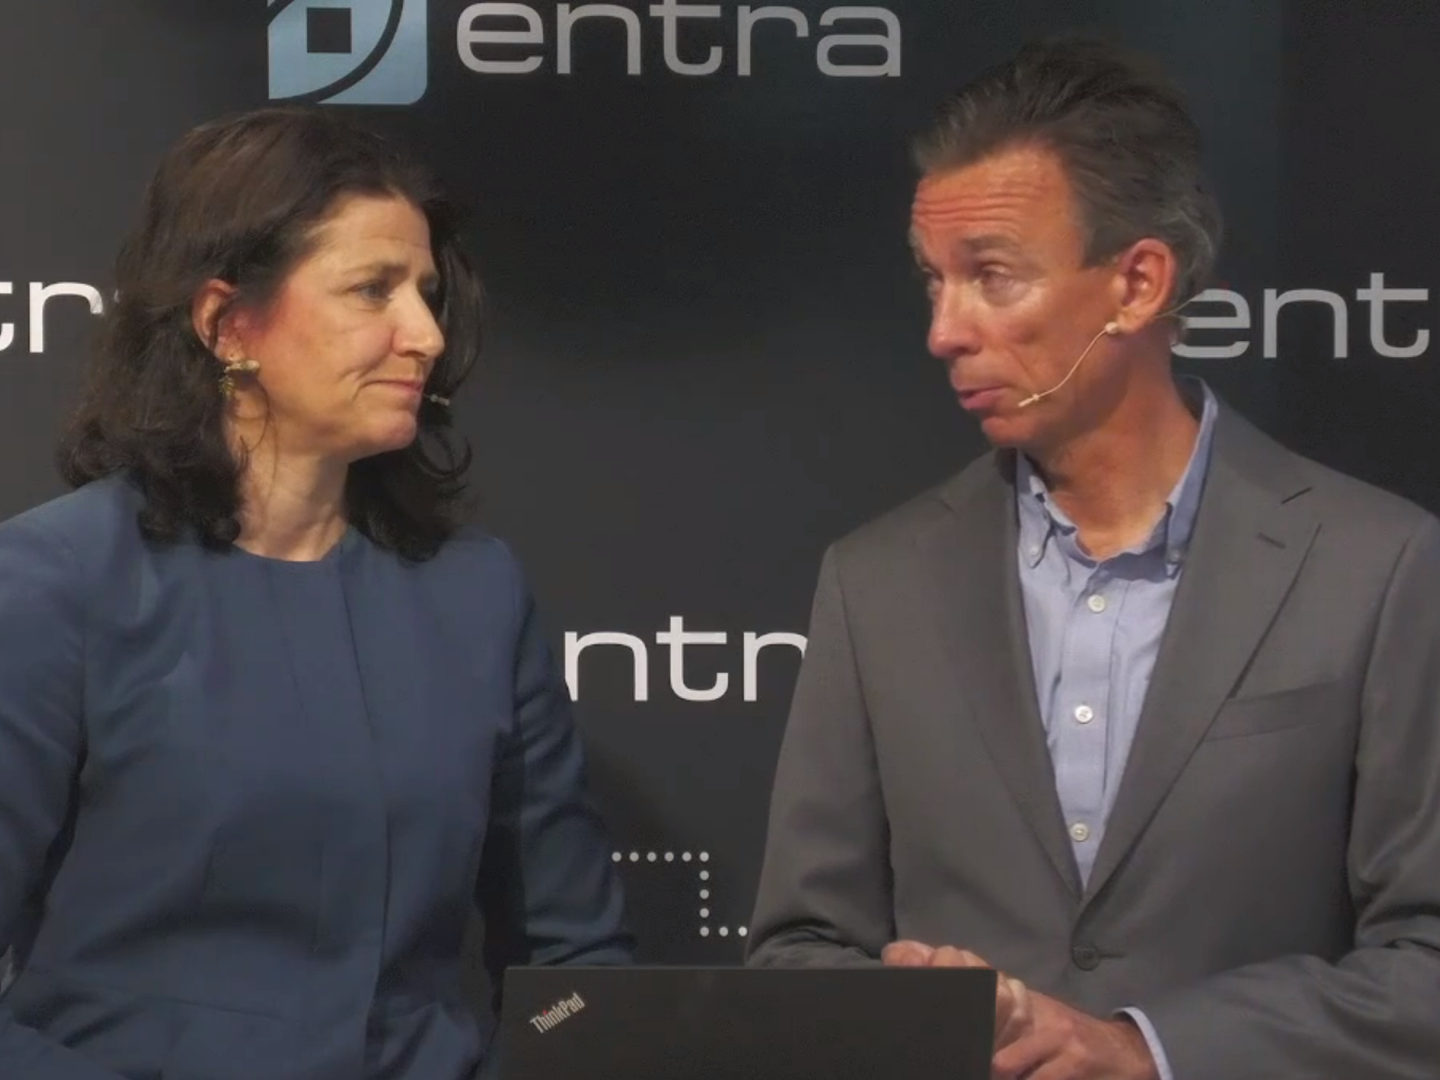 BLIR NEDGRADERT: Administrerende direktør Sonja Horn og Anders Olstad i Entra. | Photo: skjermdump av webcast på Entras hjemmeside